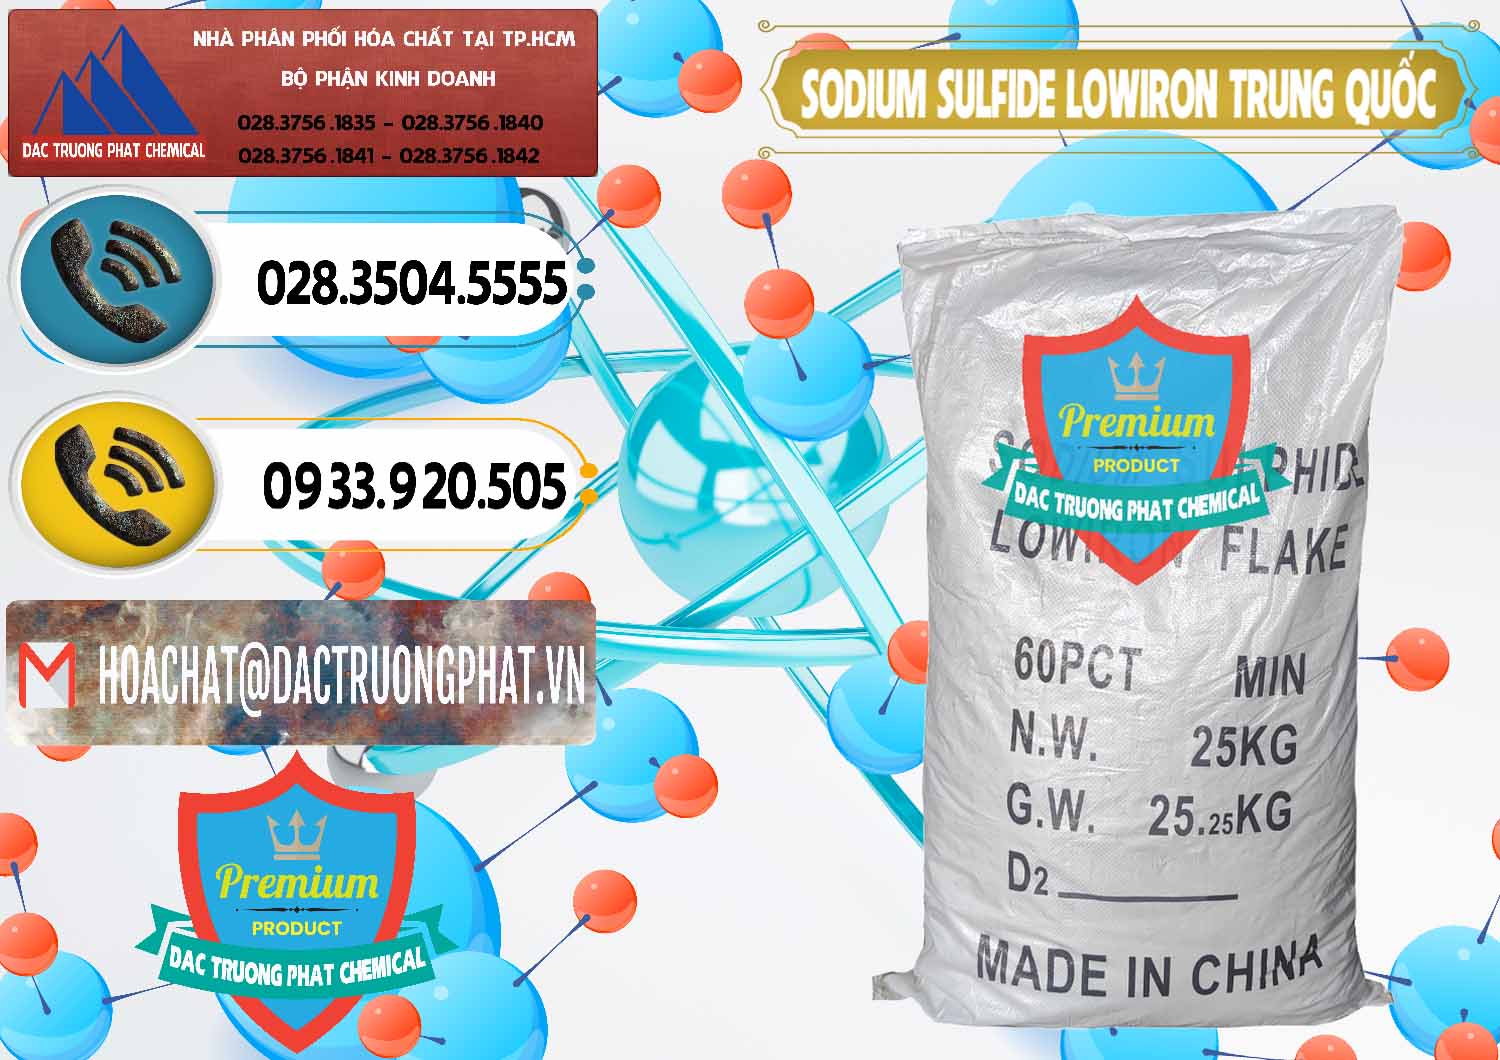 Kinh doanh - bán Sodium Sulfide NA2S – Đá Thối Lowiron Trung Quốc China - 0227 - Chuyên bán - cung cấp hóa chất tại TP.HCM - hoachatdetnhuom.vn